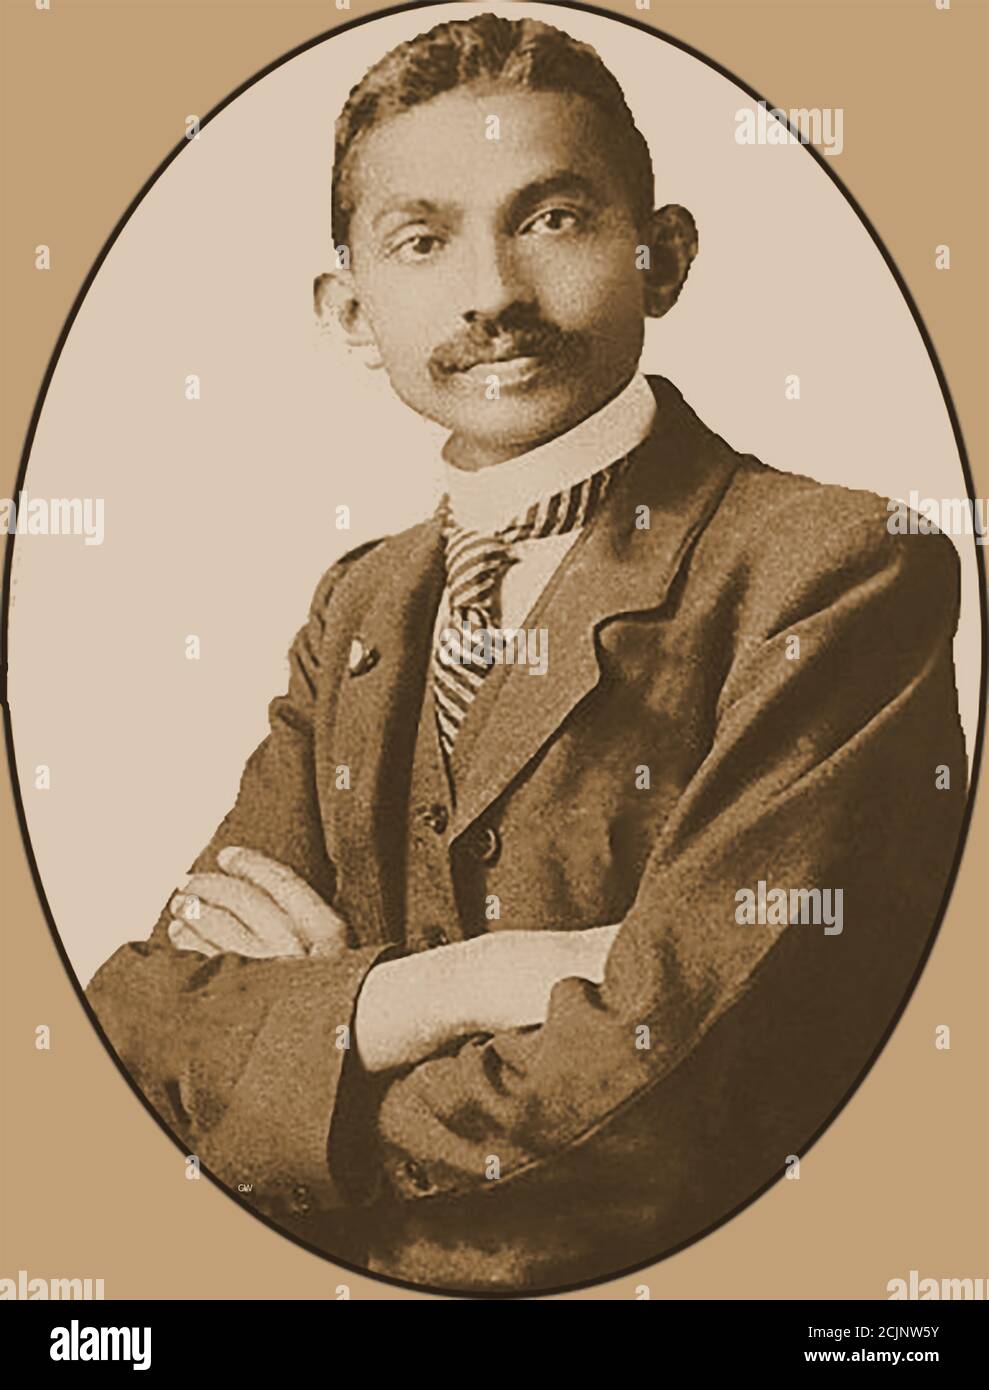 Un portrait d'un jeune Mahatma Gandhi (37 ans) -- Mohandas Karamchand Gandhi (1869 – 1948) était un avocat indien, un militant des droits civiques, un nationaliste anti-colonial et un éthicien politique, qui était célèbre pour sa résistance non violente dans sa campagne réussie pour l'indépendance de l'Inde par rapport à la domination britannique. Banque D'Images